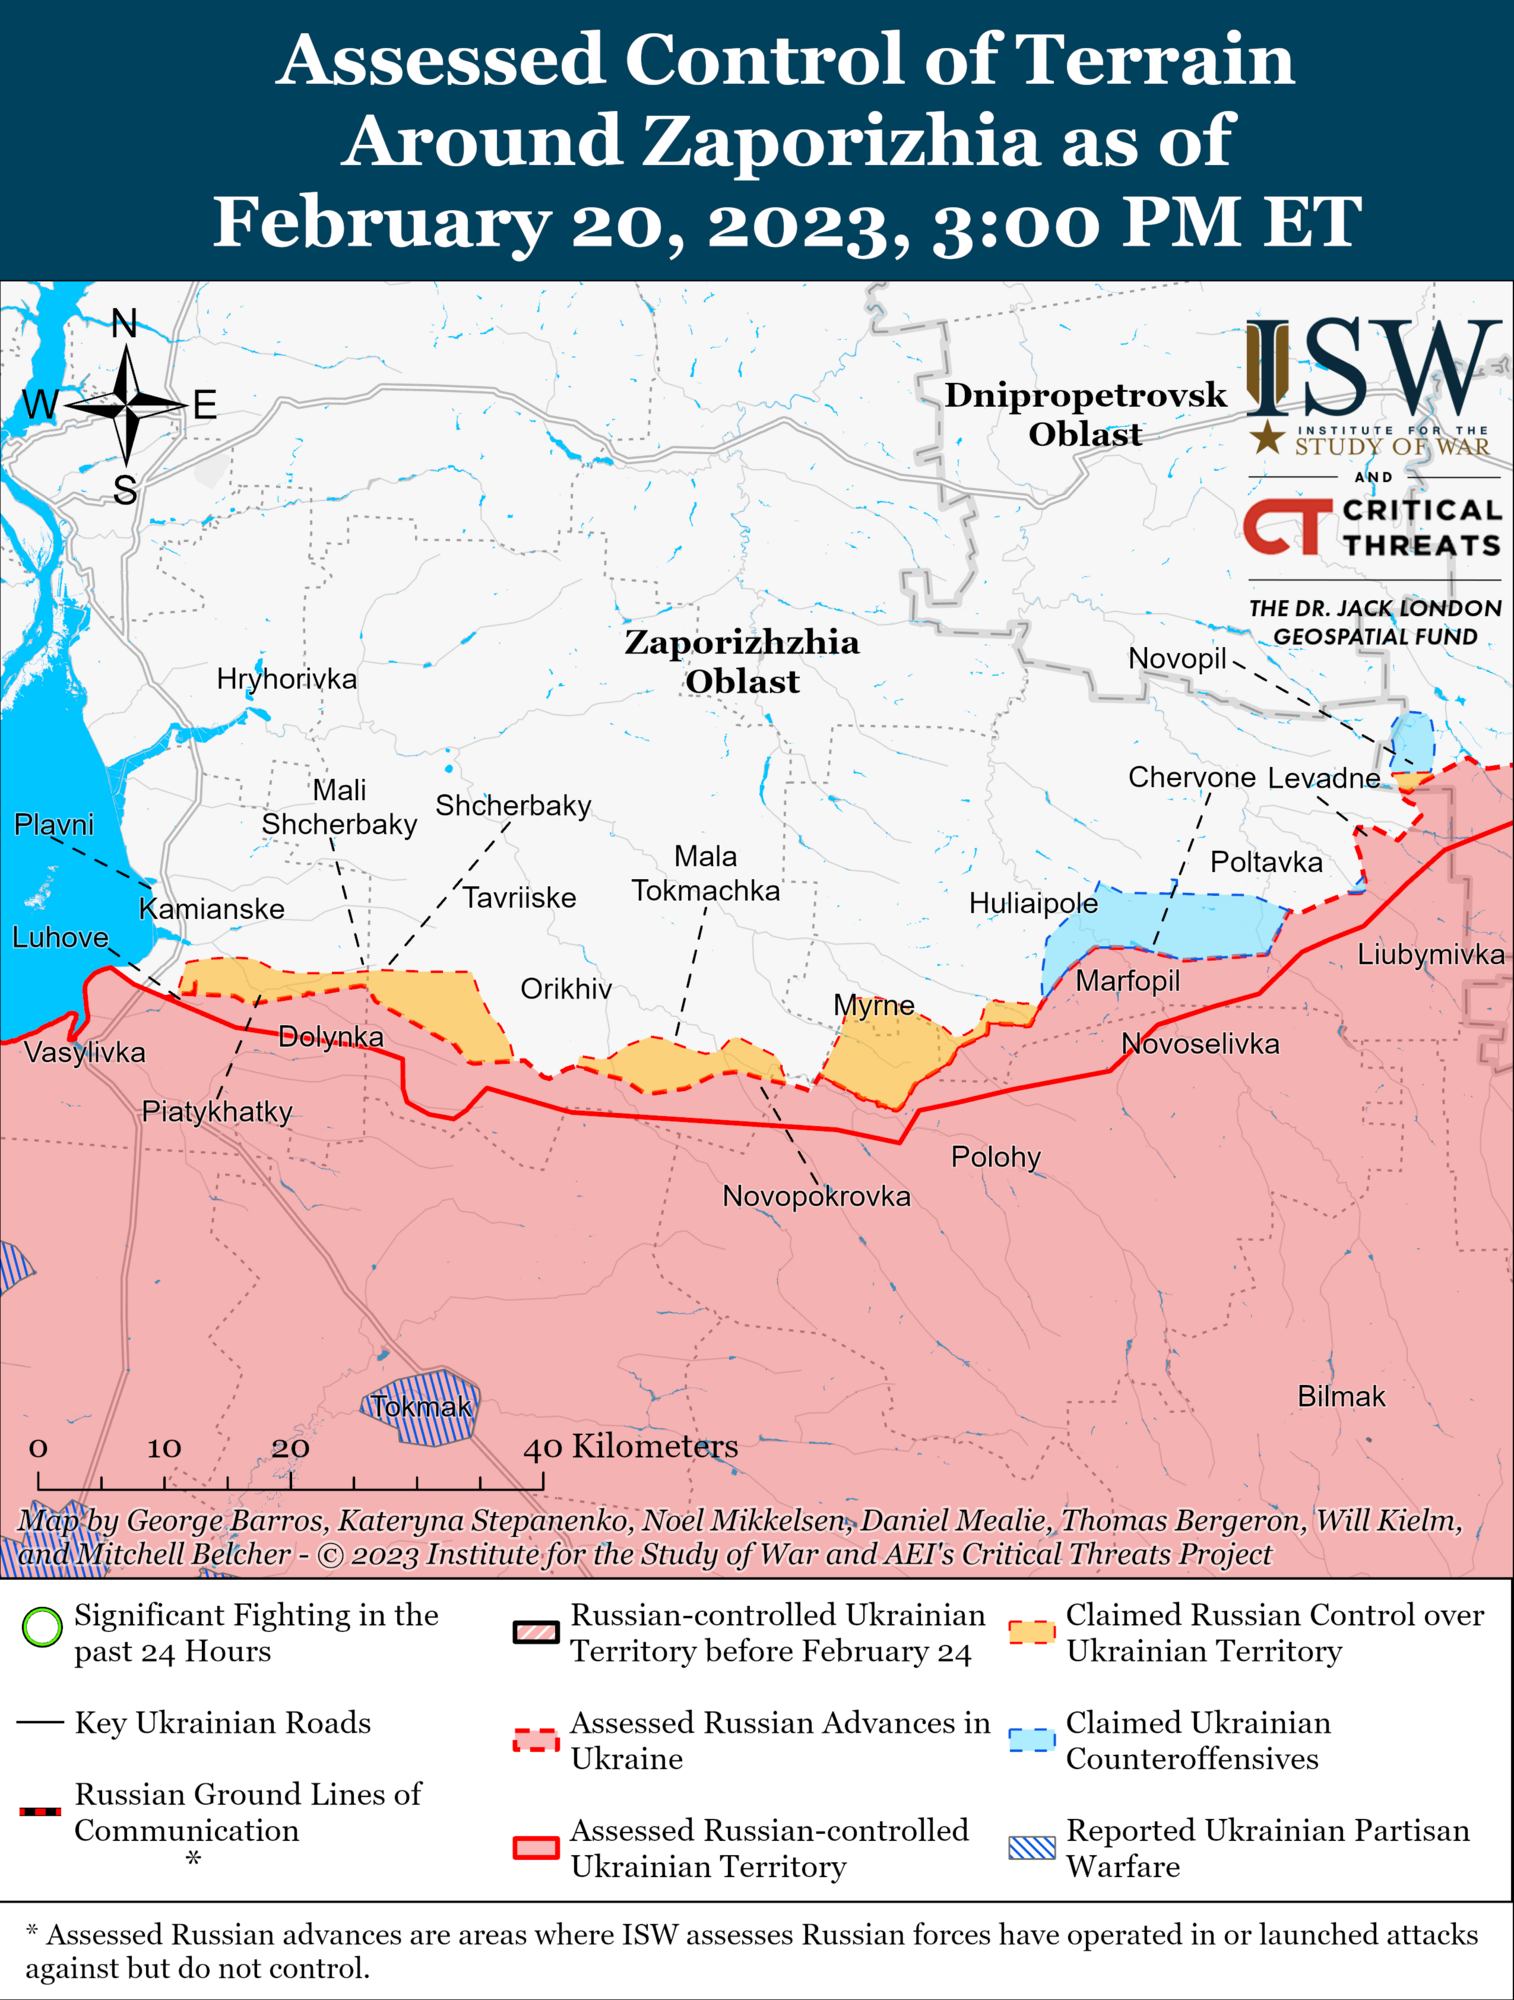 Росії не вистачає сил на фронті, Україна може захопити ініціативу: в ISW дали прогноз про хід війни 2023 року